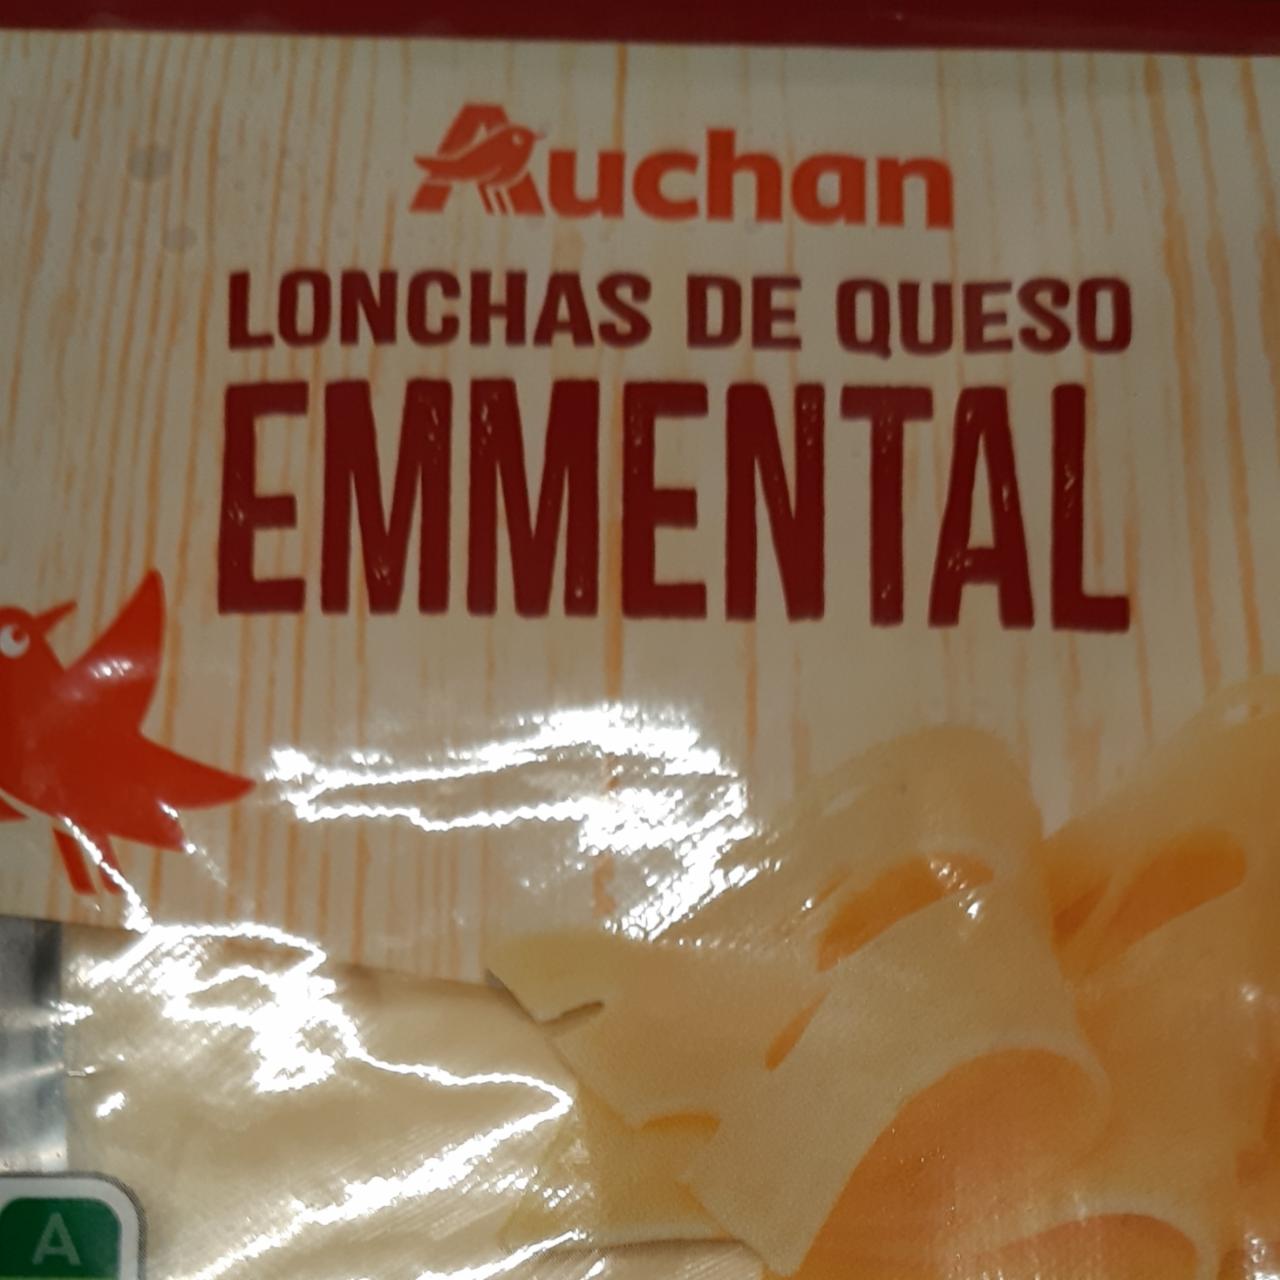 Fotografie - Emmental lonchas de queso Auchan